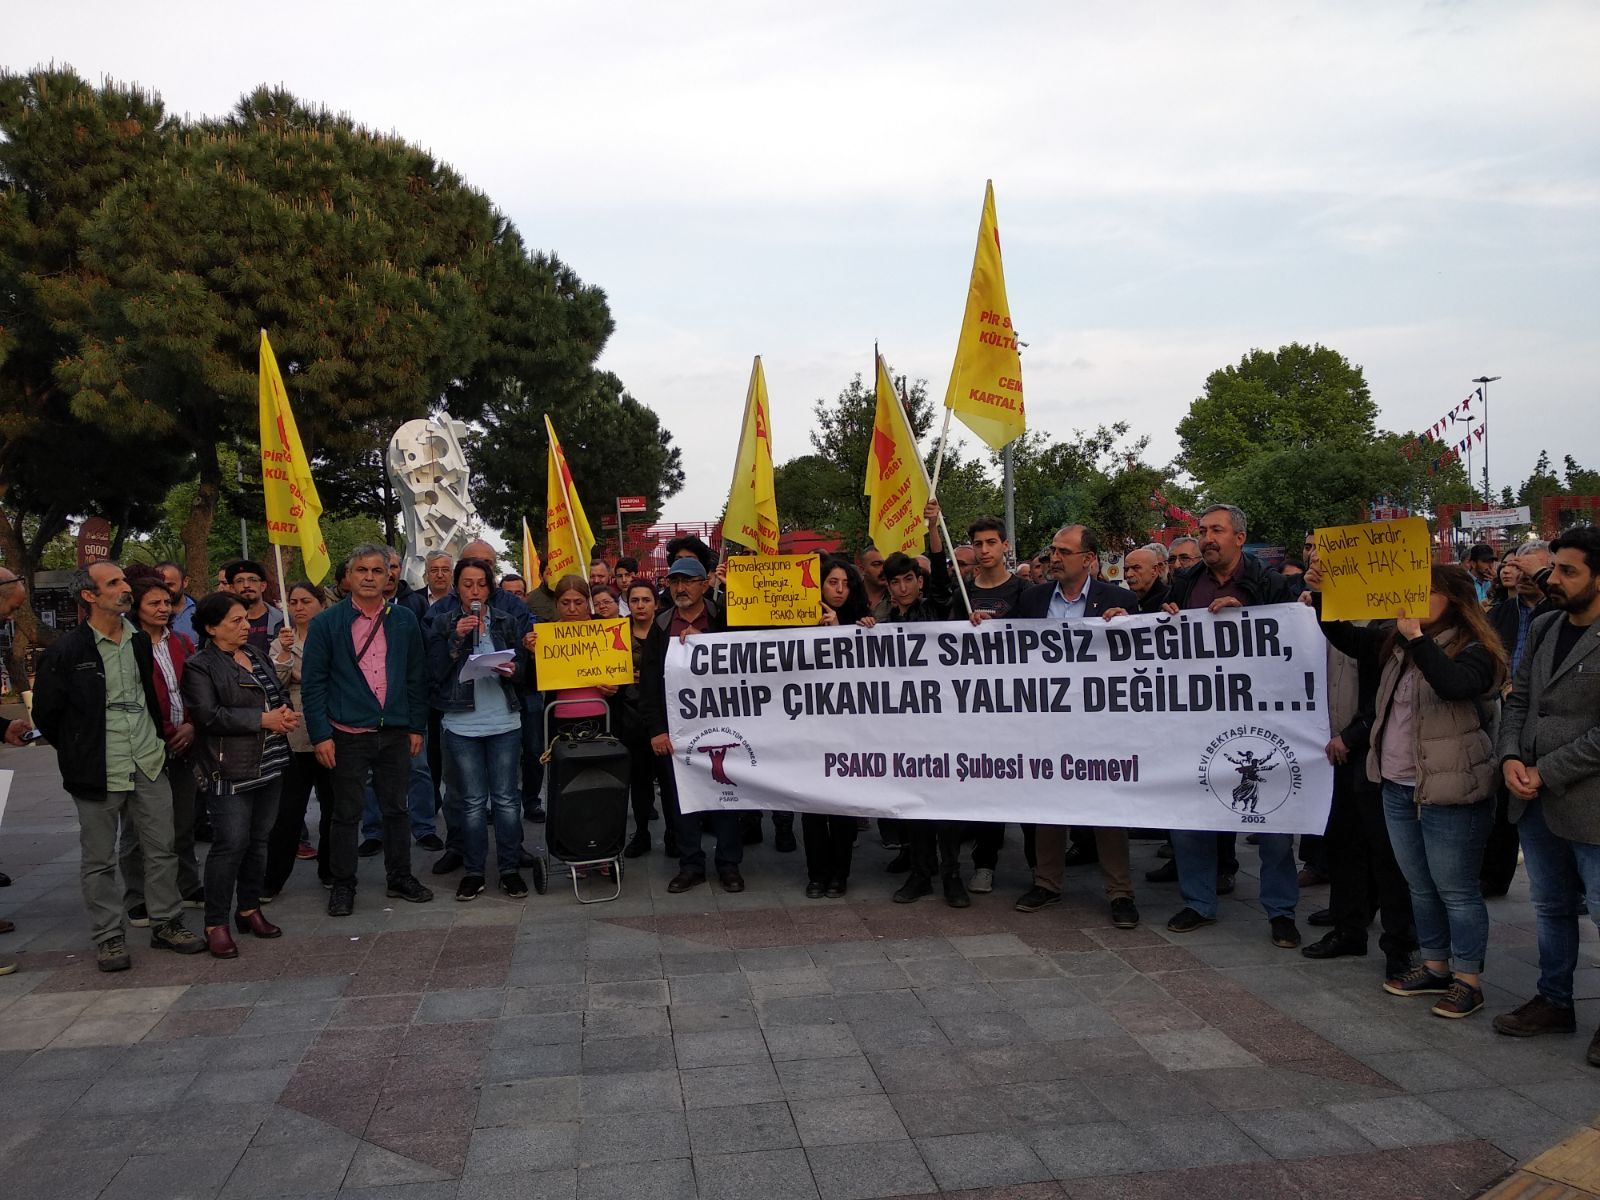 Cemevi ve PSAKD yöneticisine yapılan faşist saldırı protesto edildi